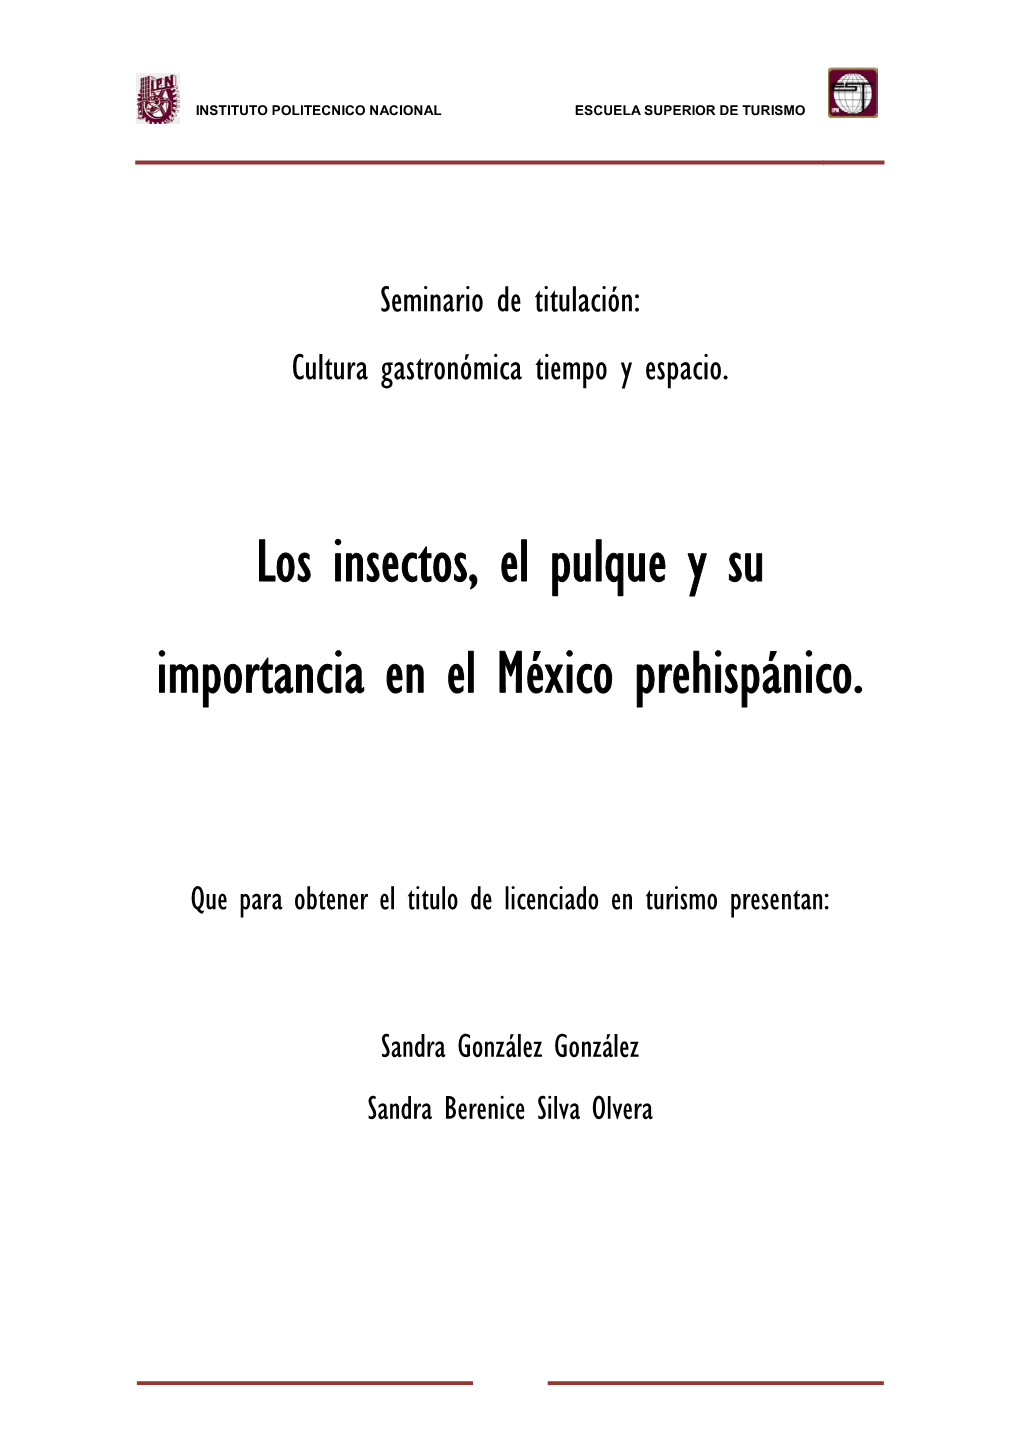 Los Insectos, El Pulque Y Su Importancia En El México Prehispánico